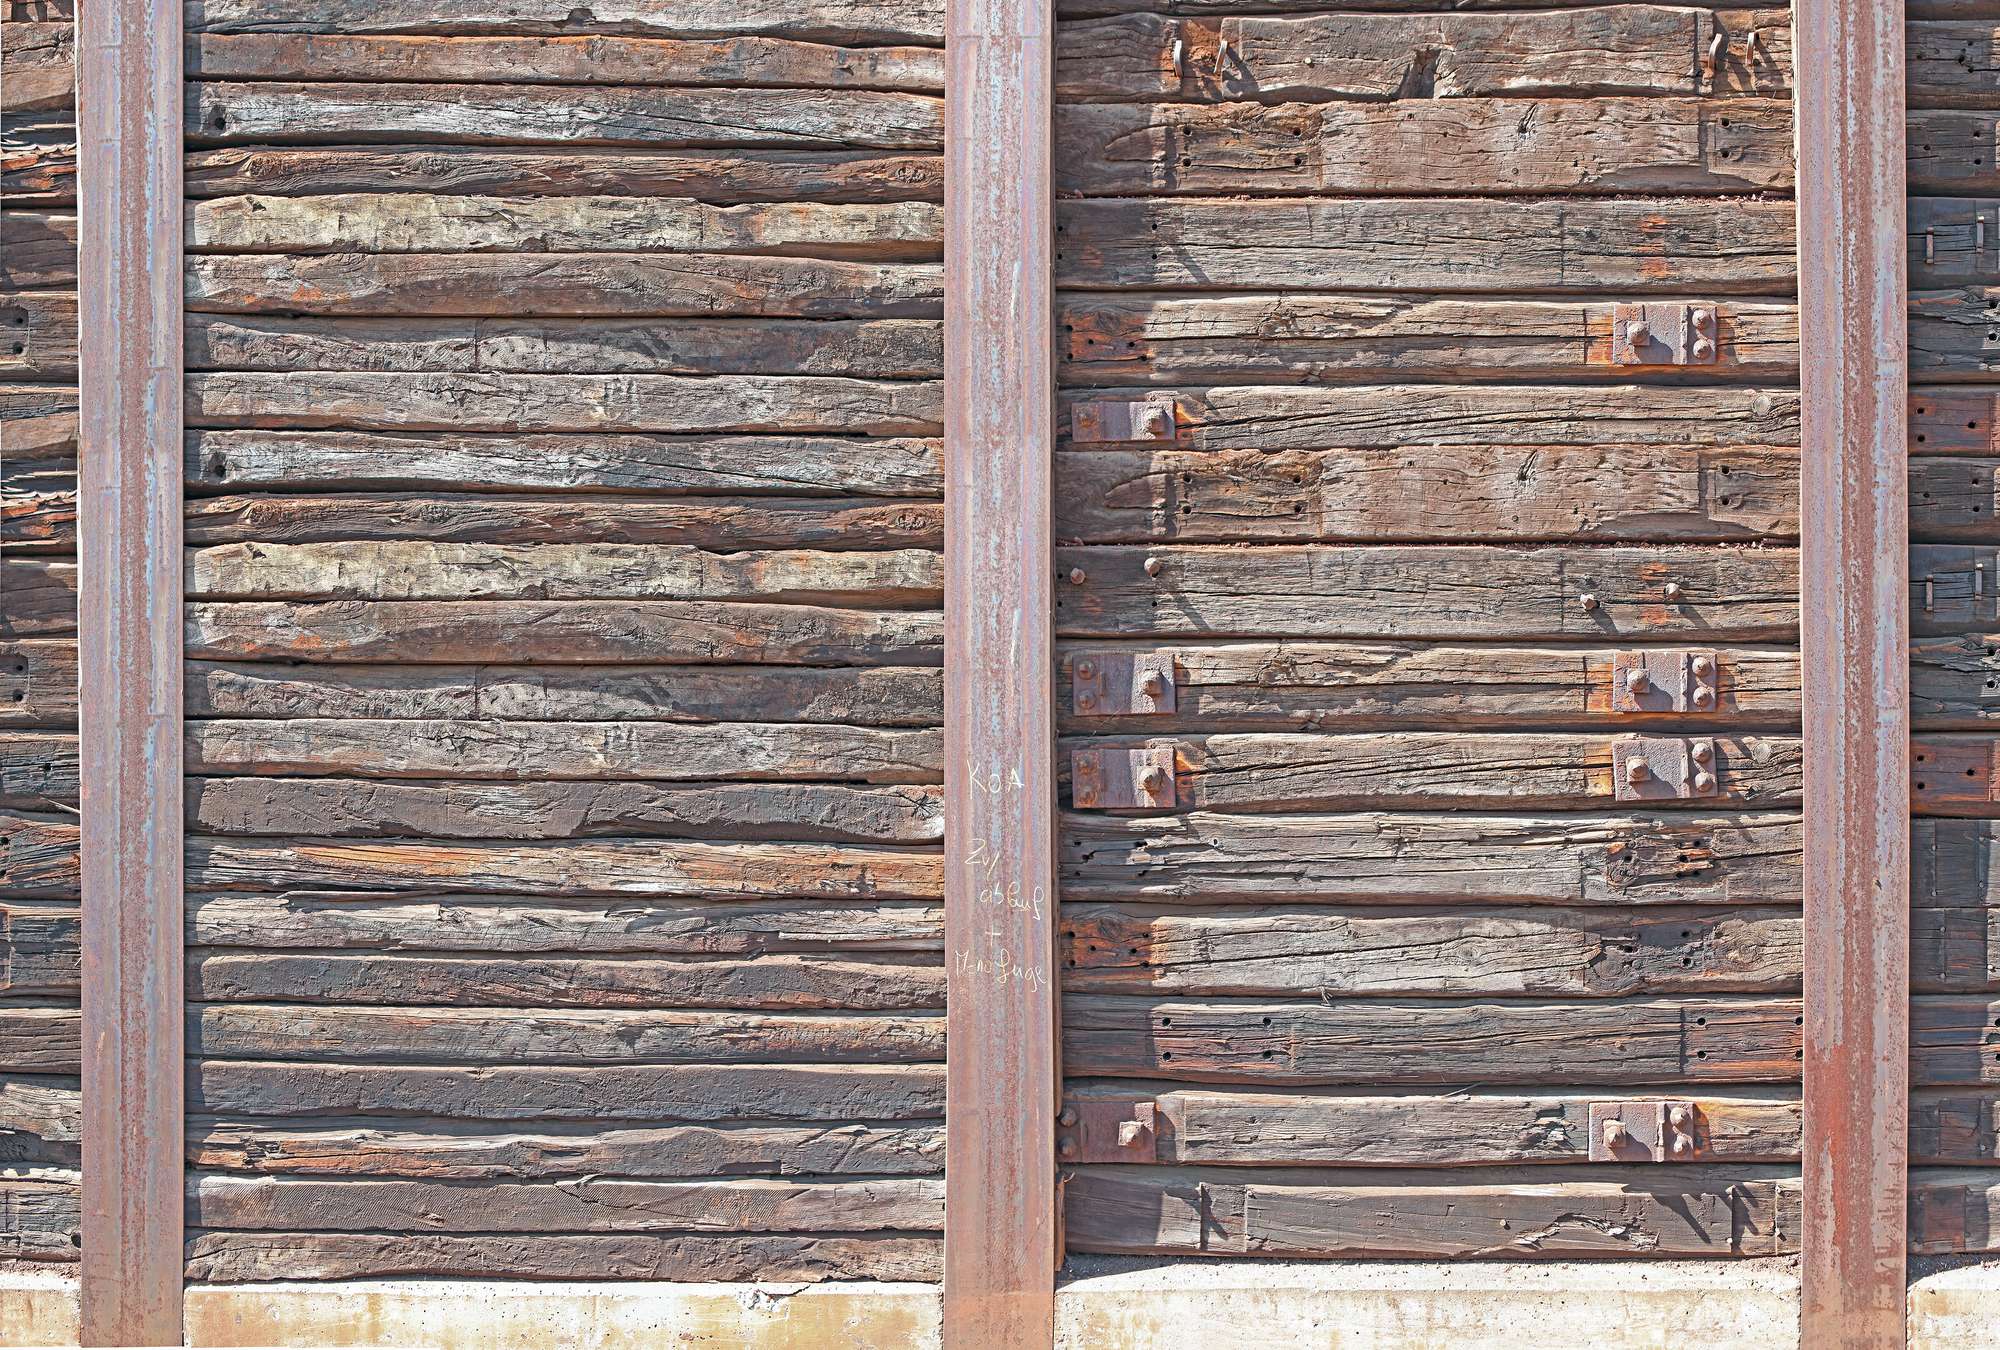             Carta da parati fotografica con tavole di legno rustiche tra travi d'acciaio
        